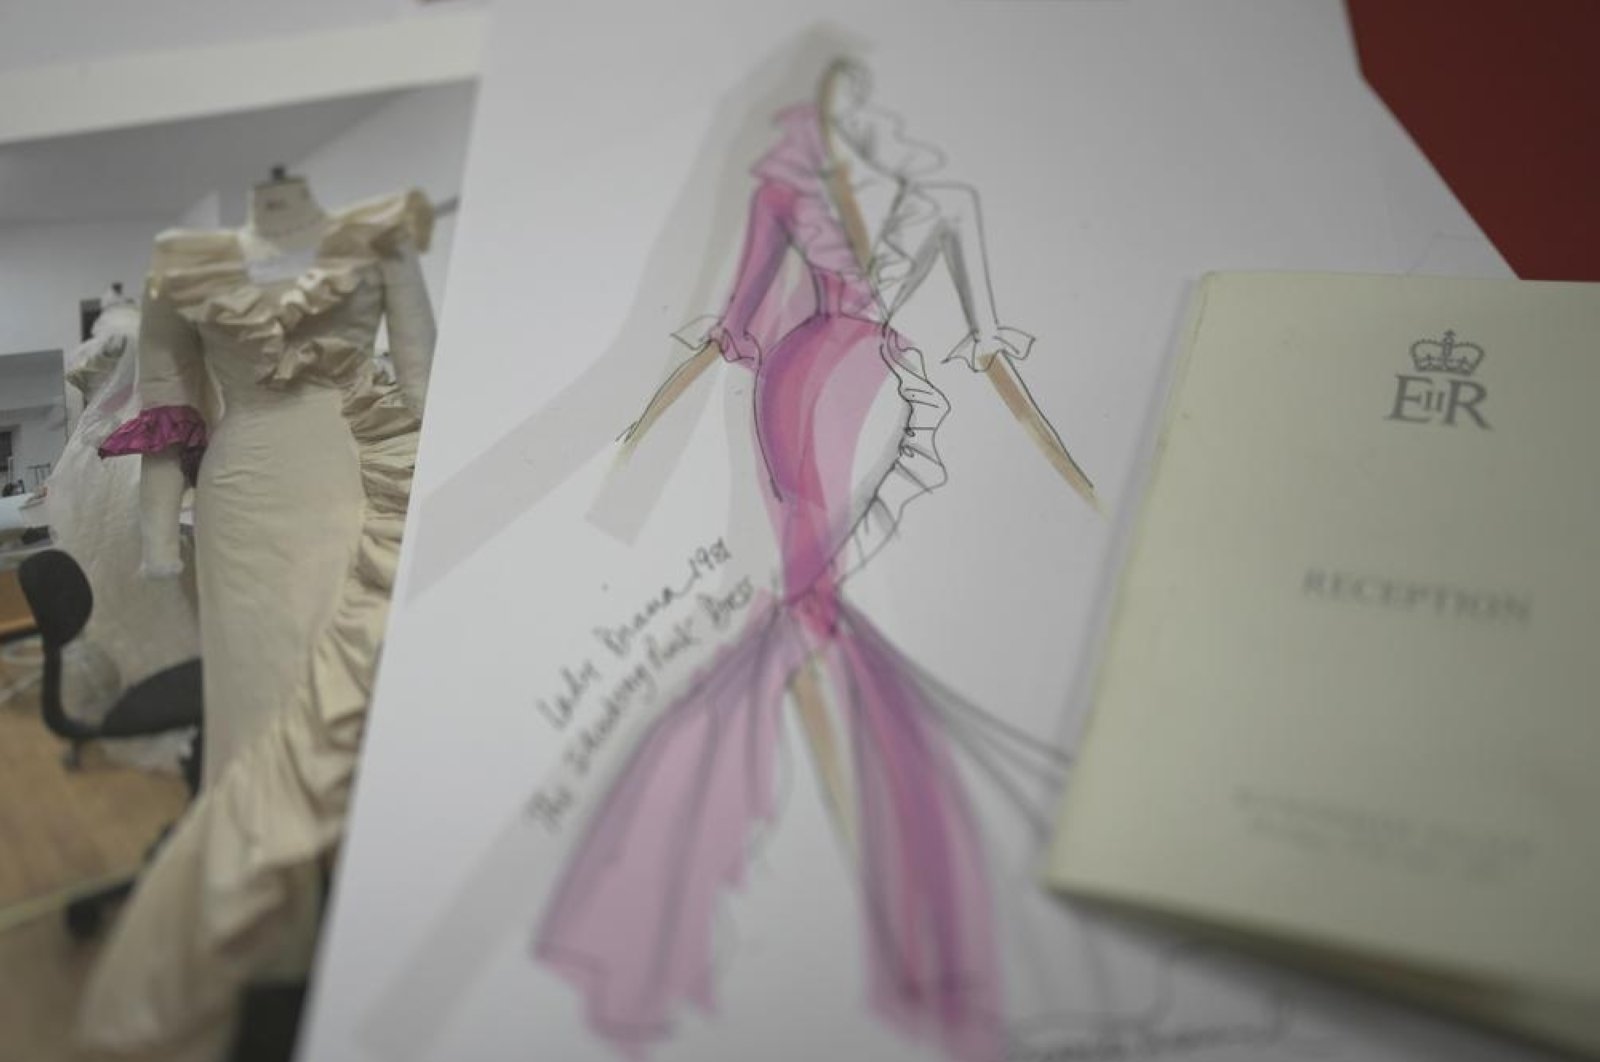 Gaun pink Diana yang ikonik didesain ulang melalui eksplorasi memori